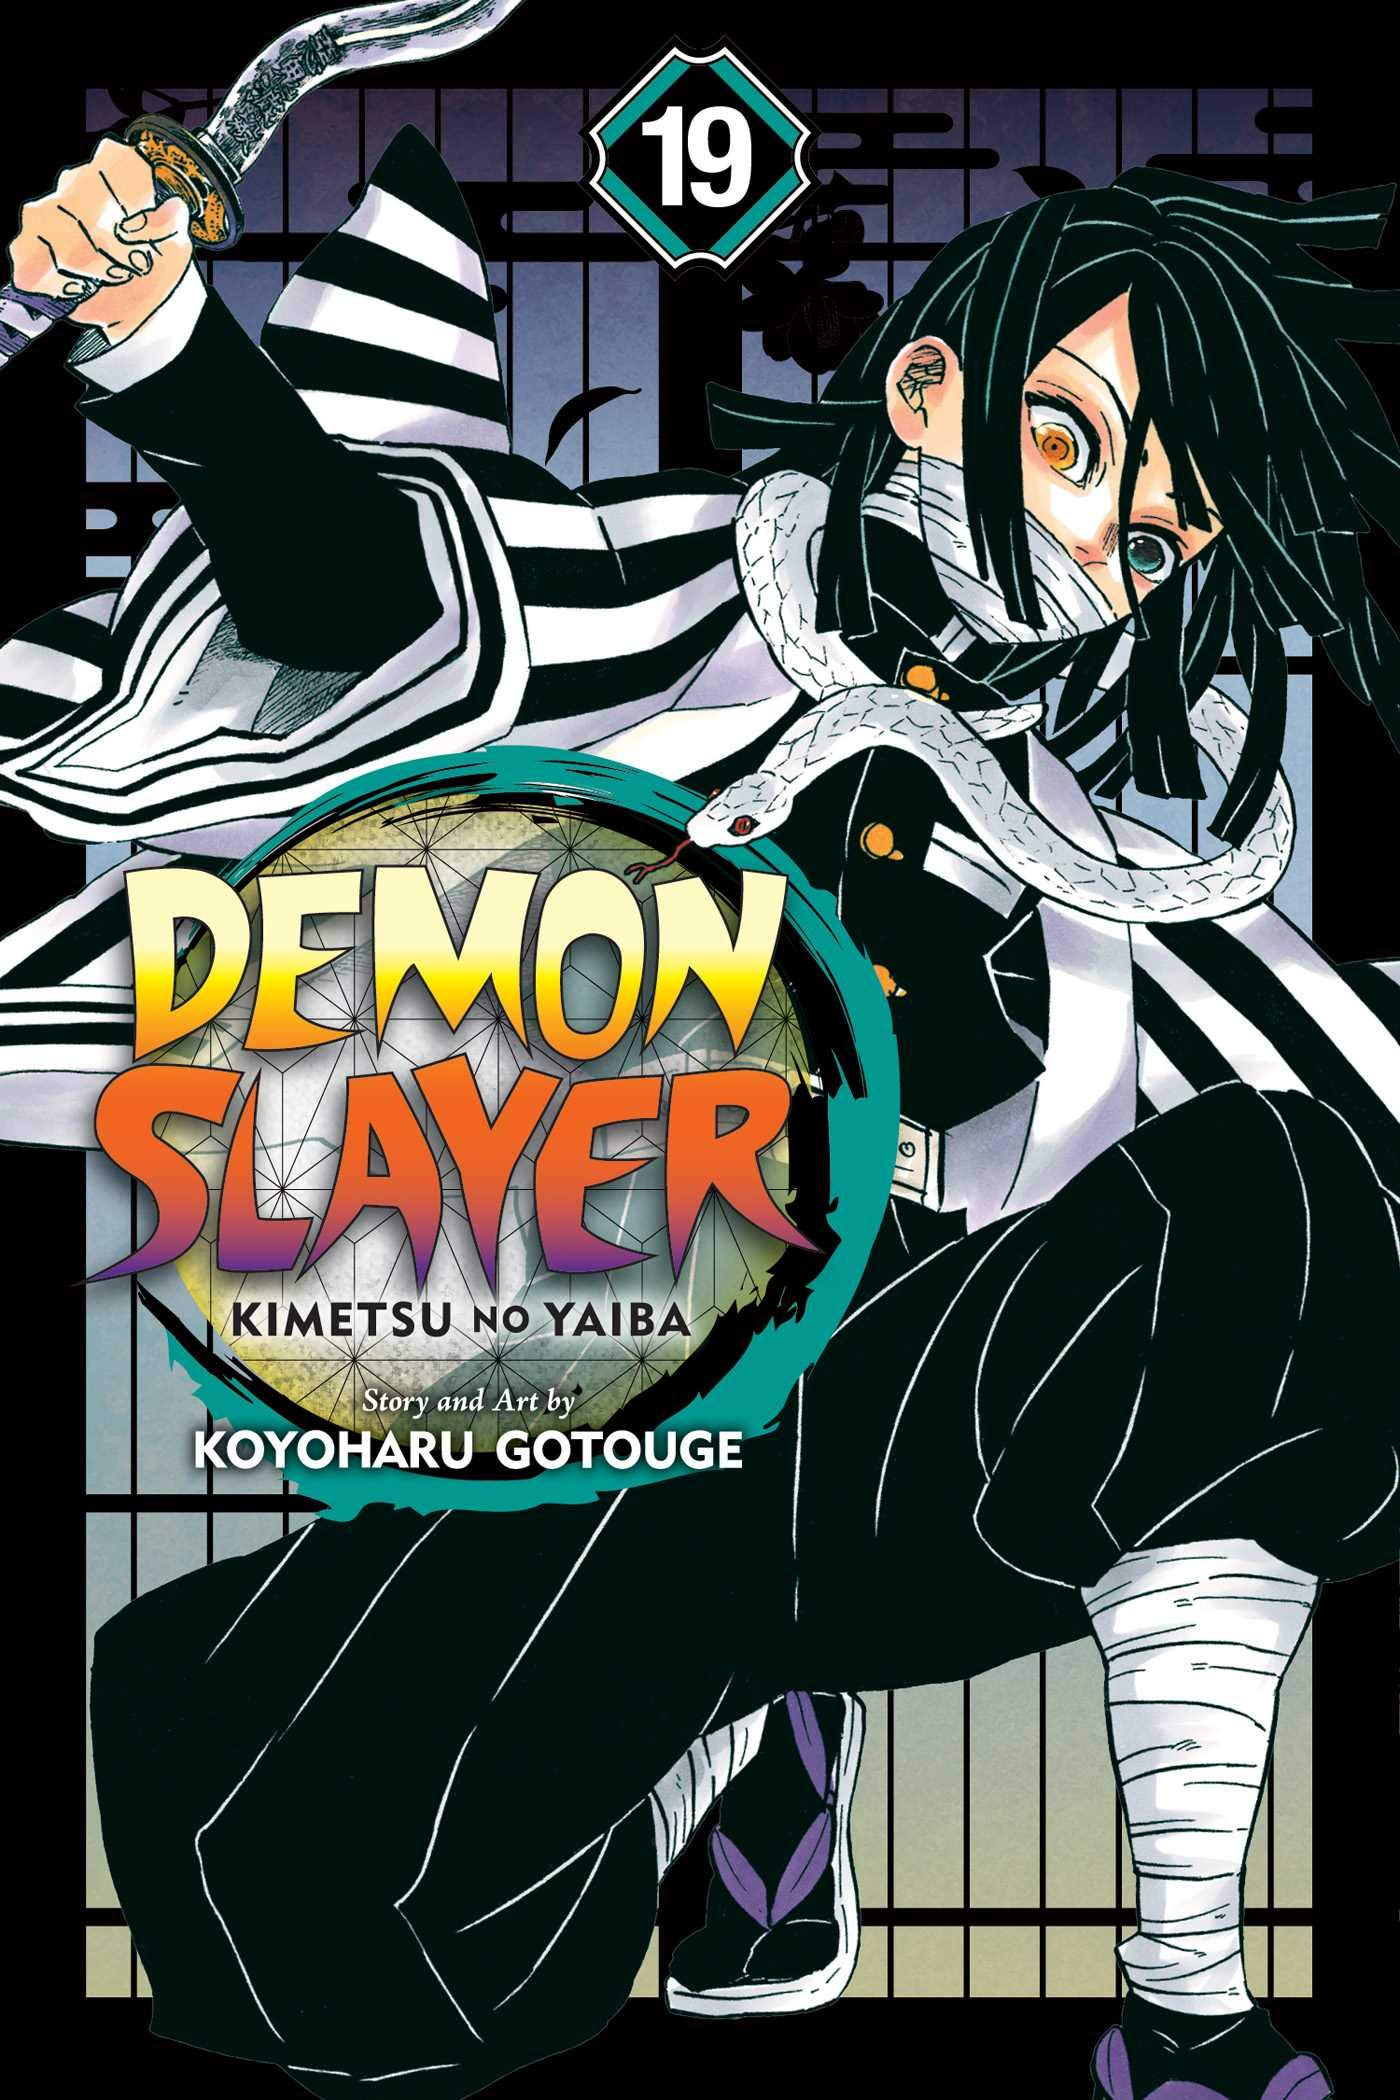 Demon Slayer Kimetsu no Yaiba Comic 1 2 3 4 5 6 7 8 9 10 11 12 13 14 15~22 NEW